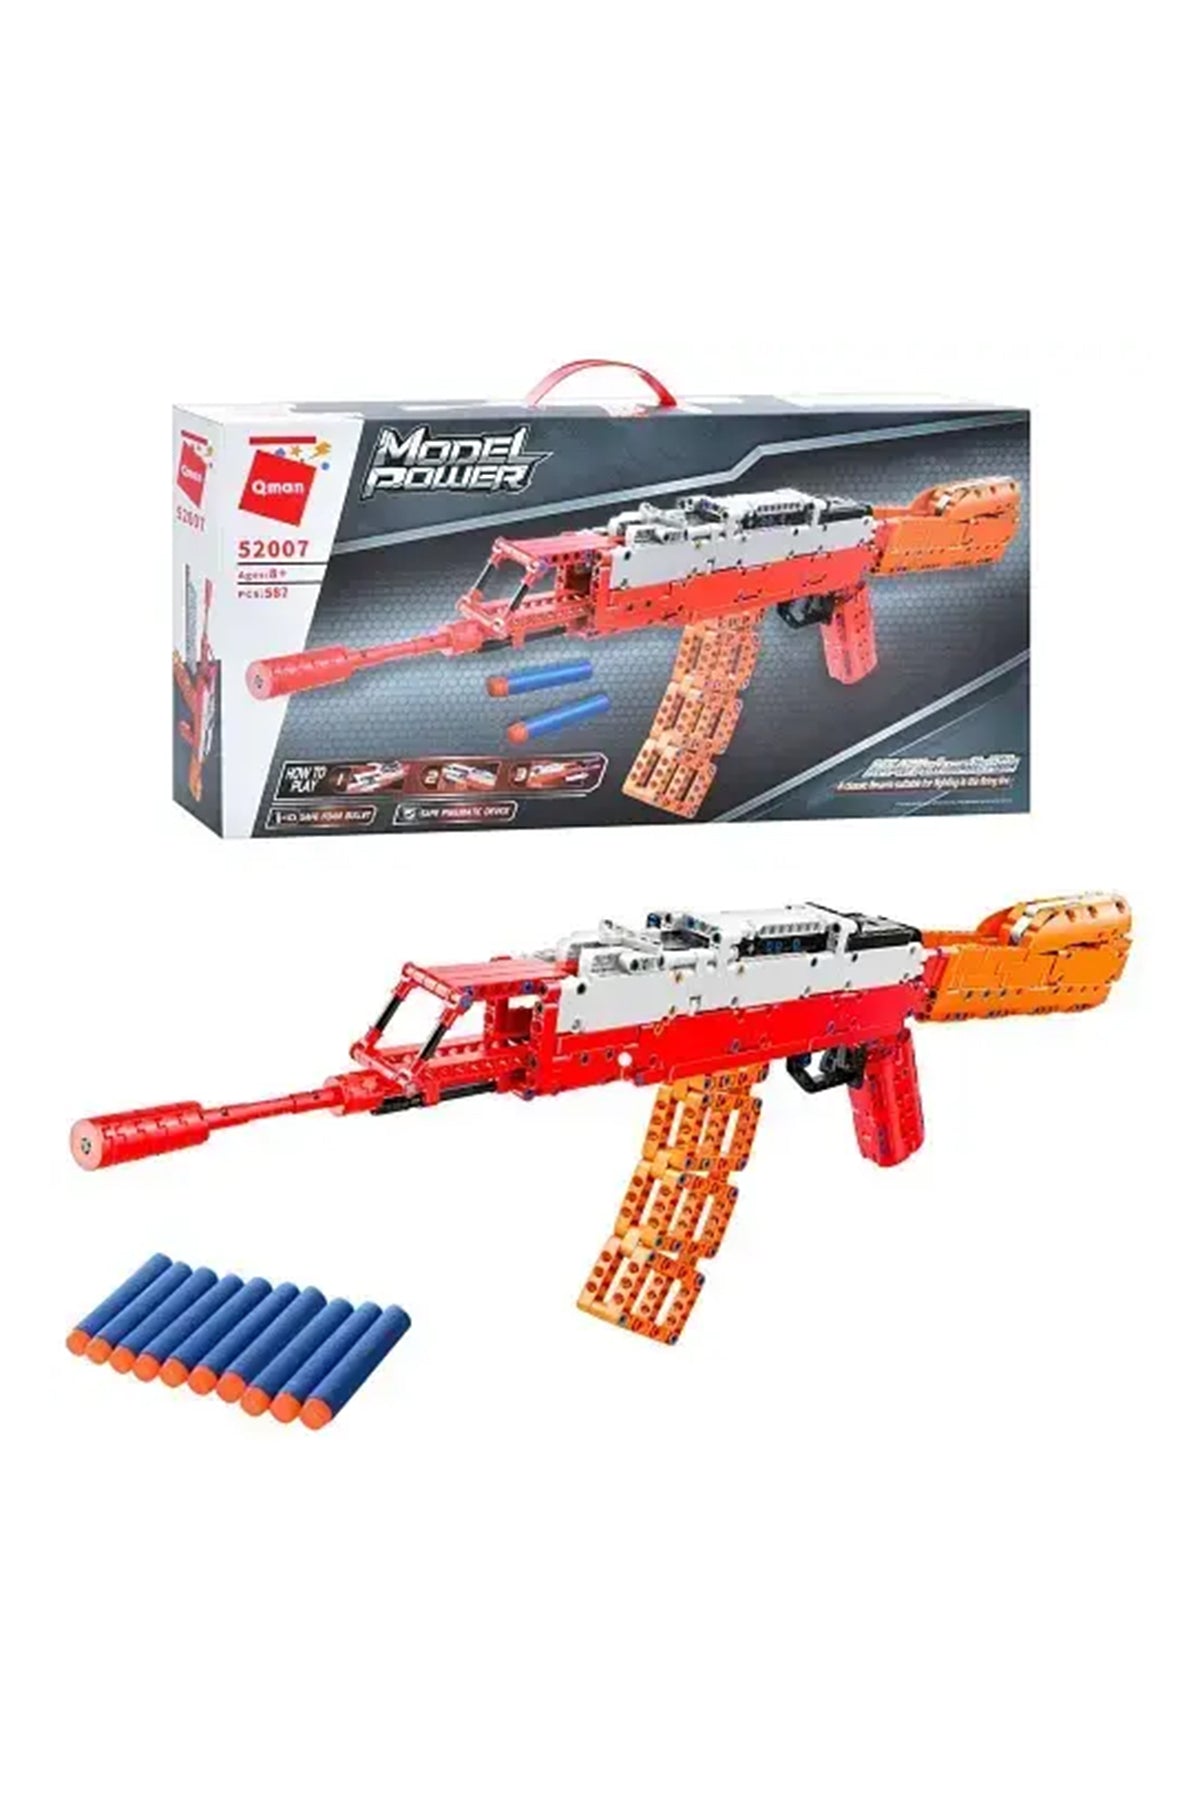 Qman: AK-47 Automatic Rifle Assemble Toy Play Set